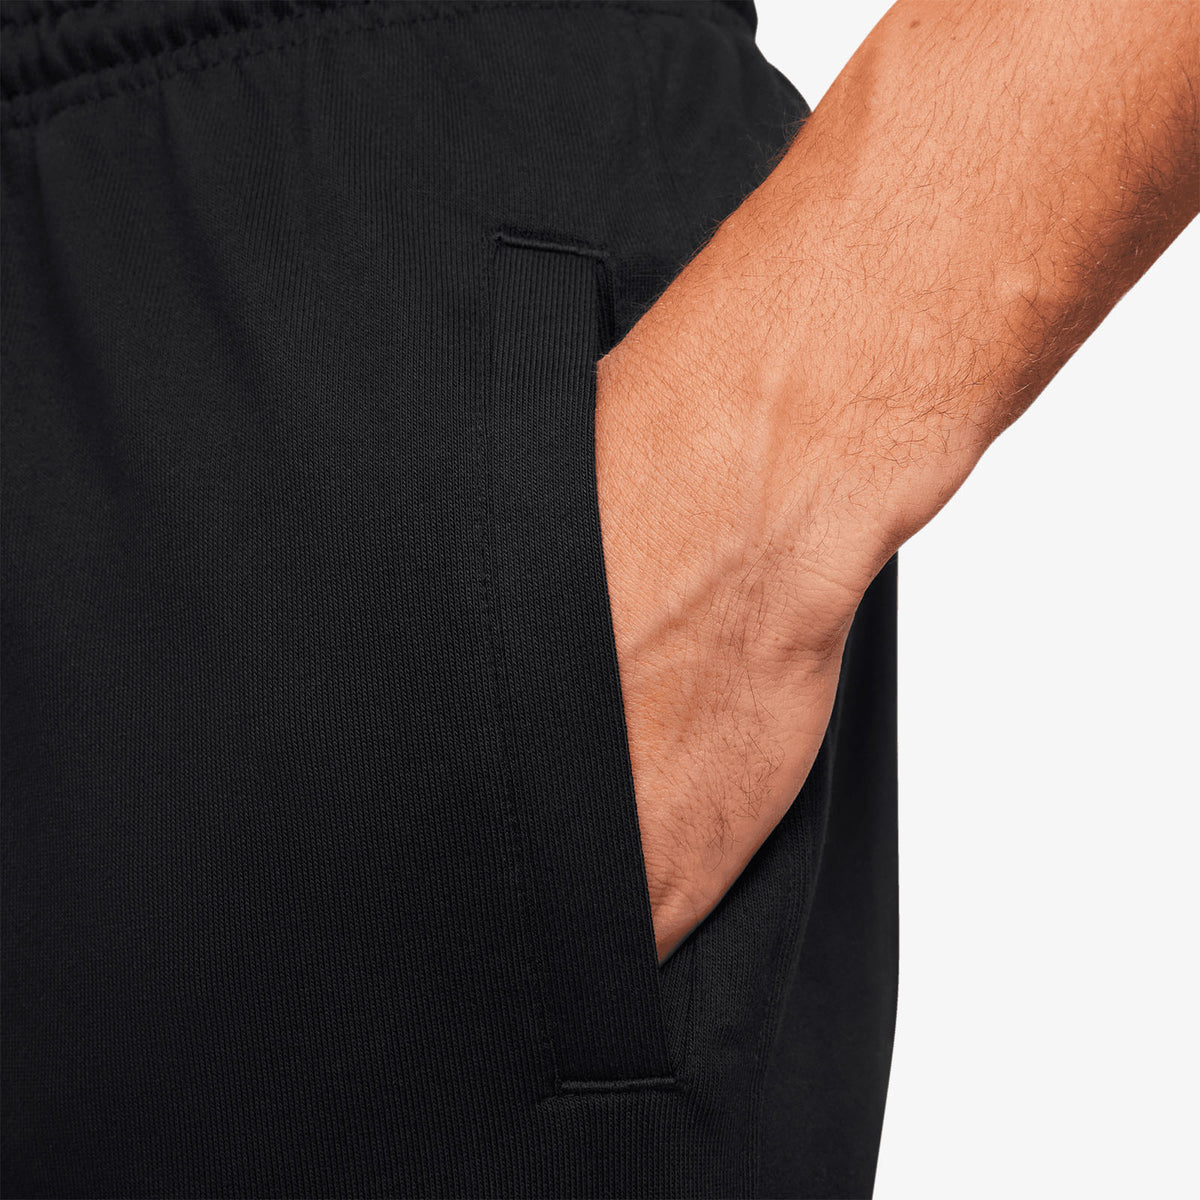 Ja Graphic Standard Issue Dri-FIT Pants - Black